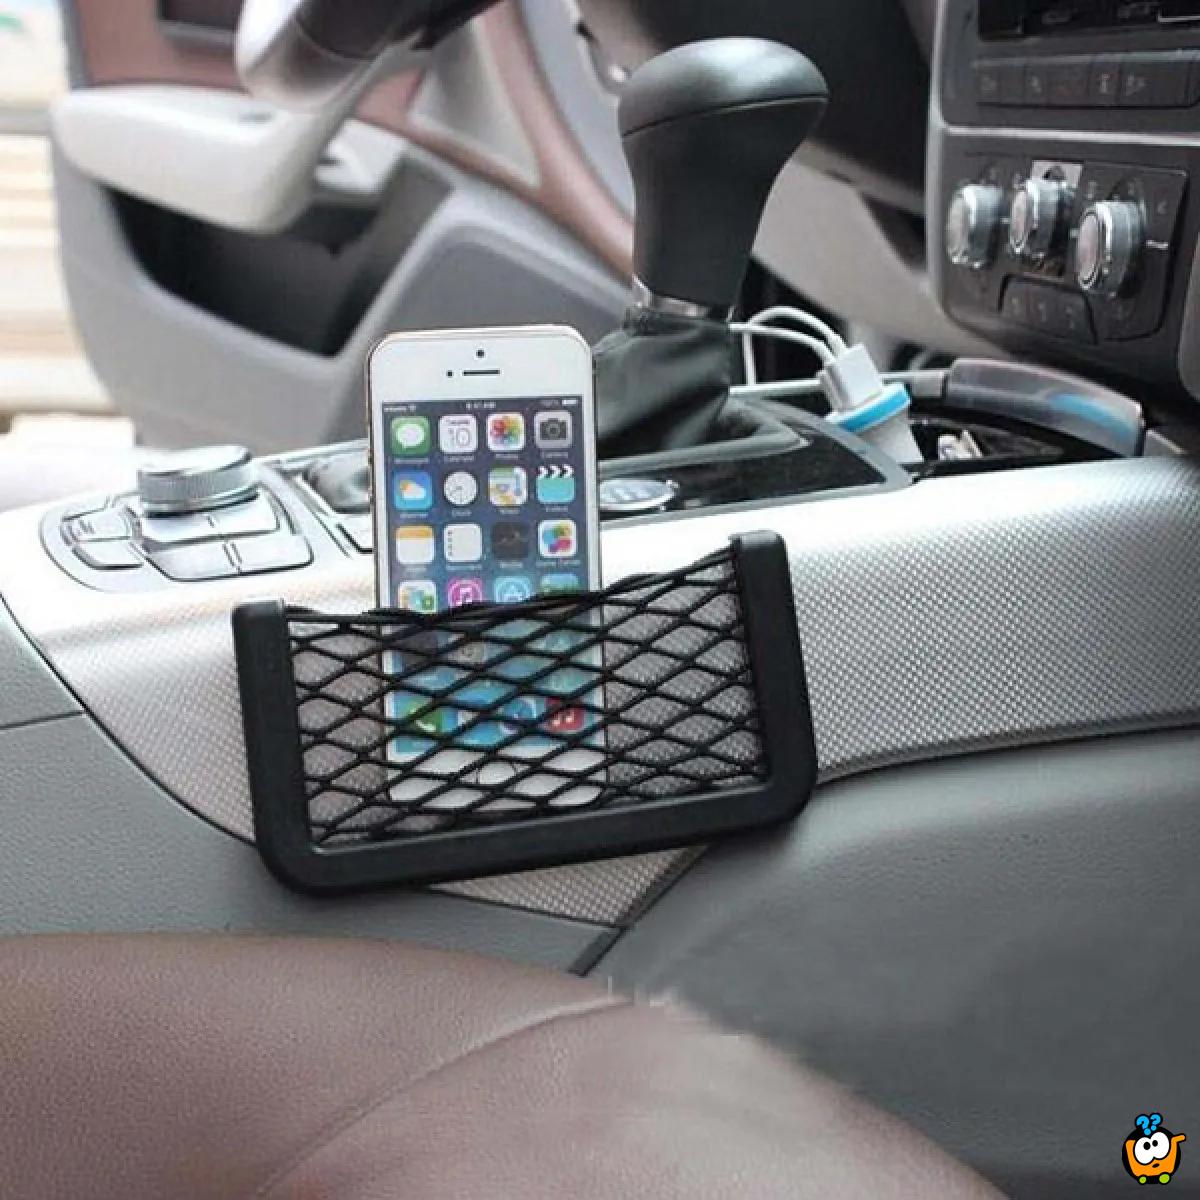 String Car Net - Univerzalna mrežica za držanje telefona i sitnih stvari u autu